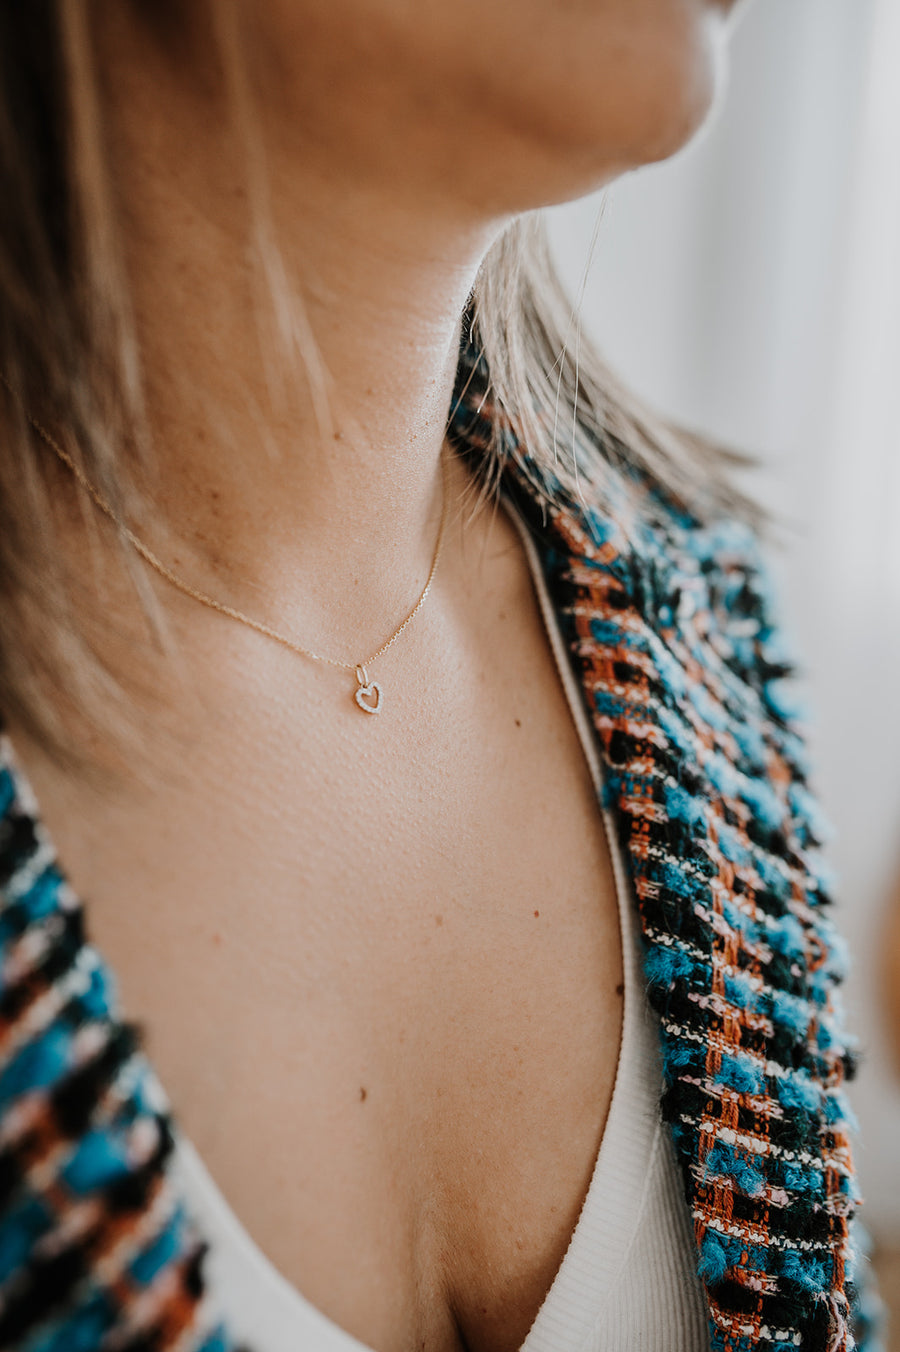 Diamond Heart Necklace | 14k Gold